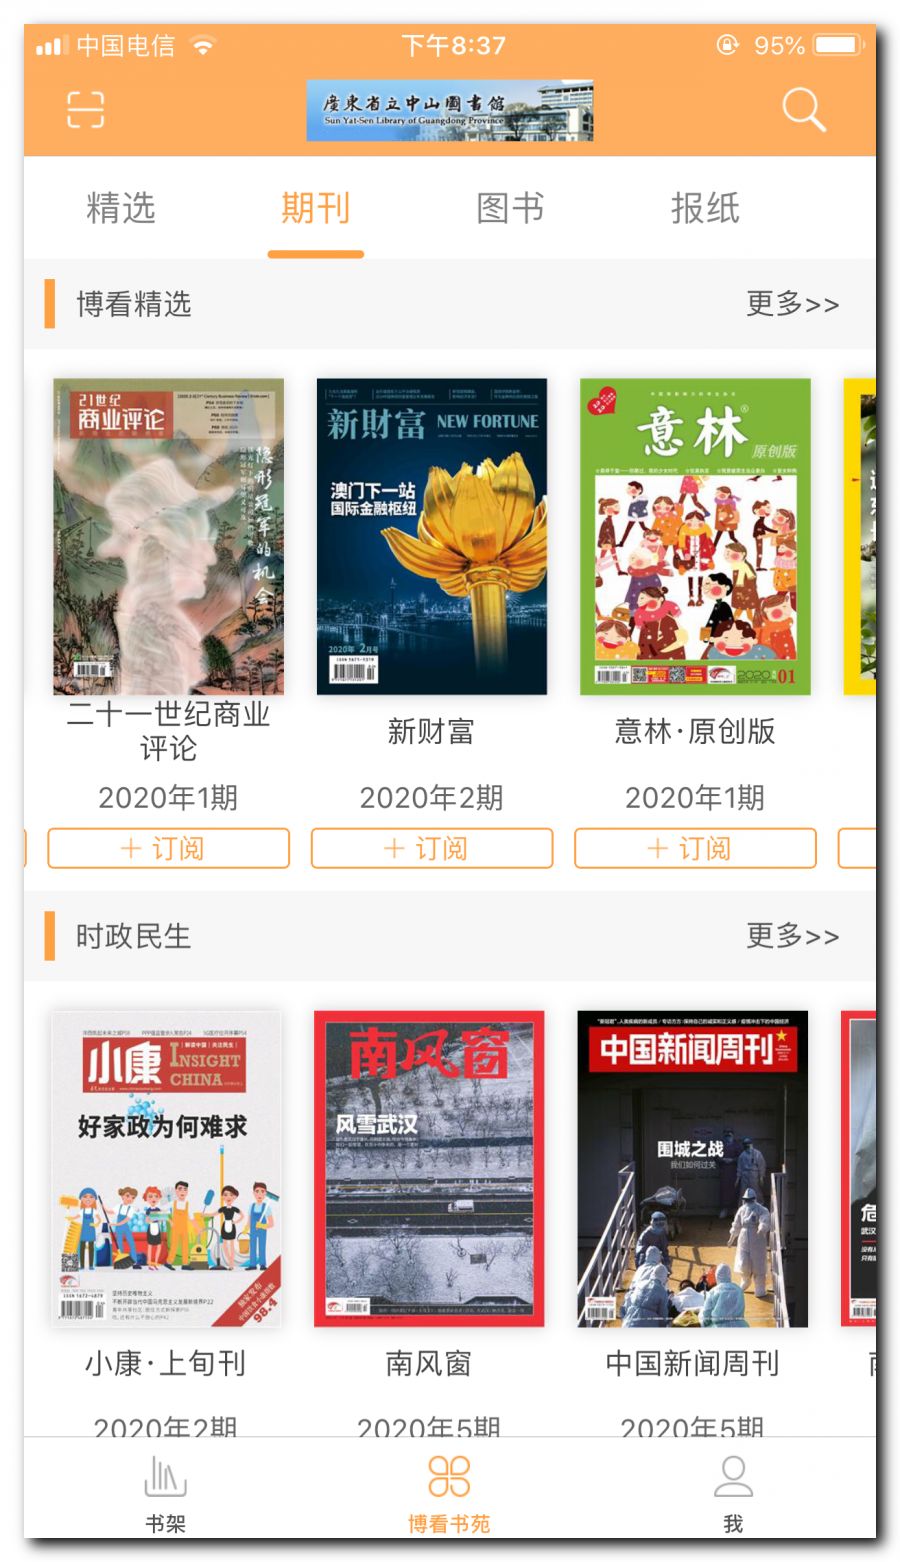 博看书苑APP一款免费阅读周刊的软件，可以免费观看畅销周刊和书籍(图2)